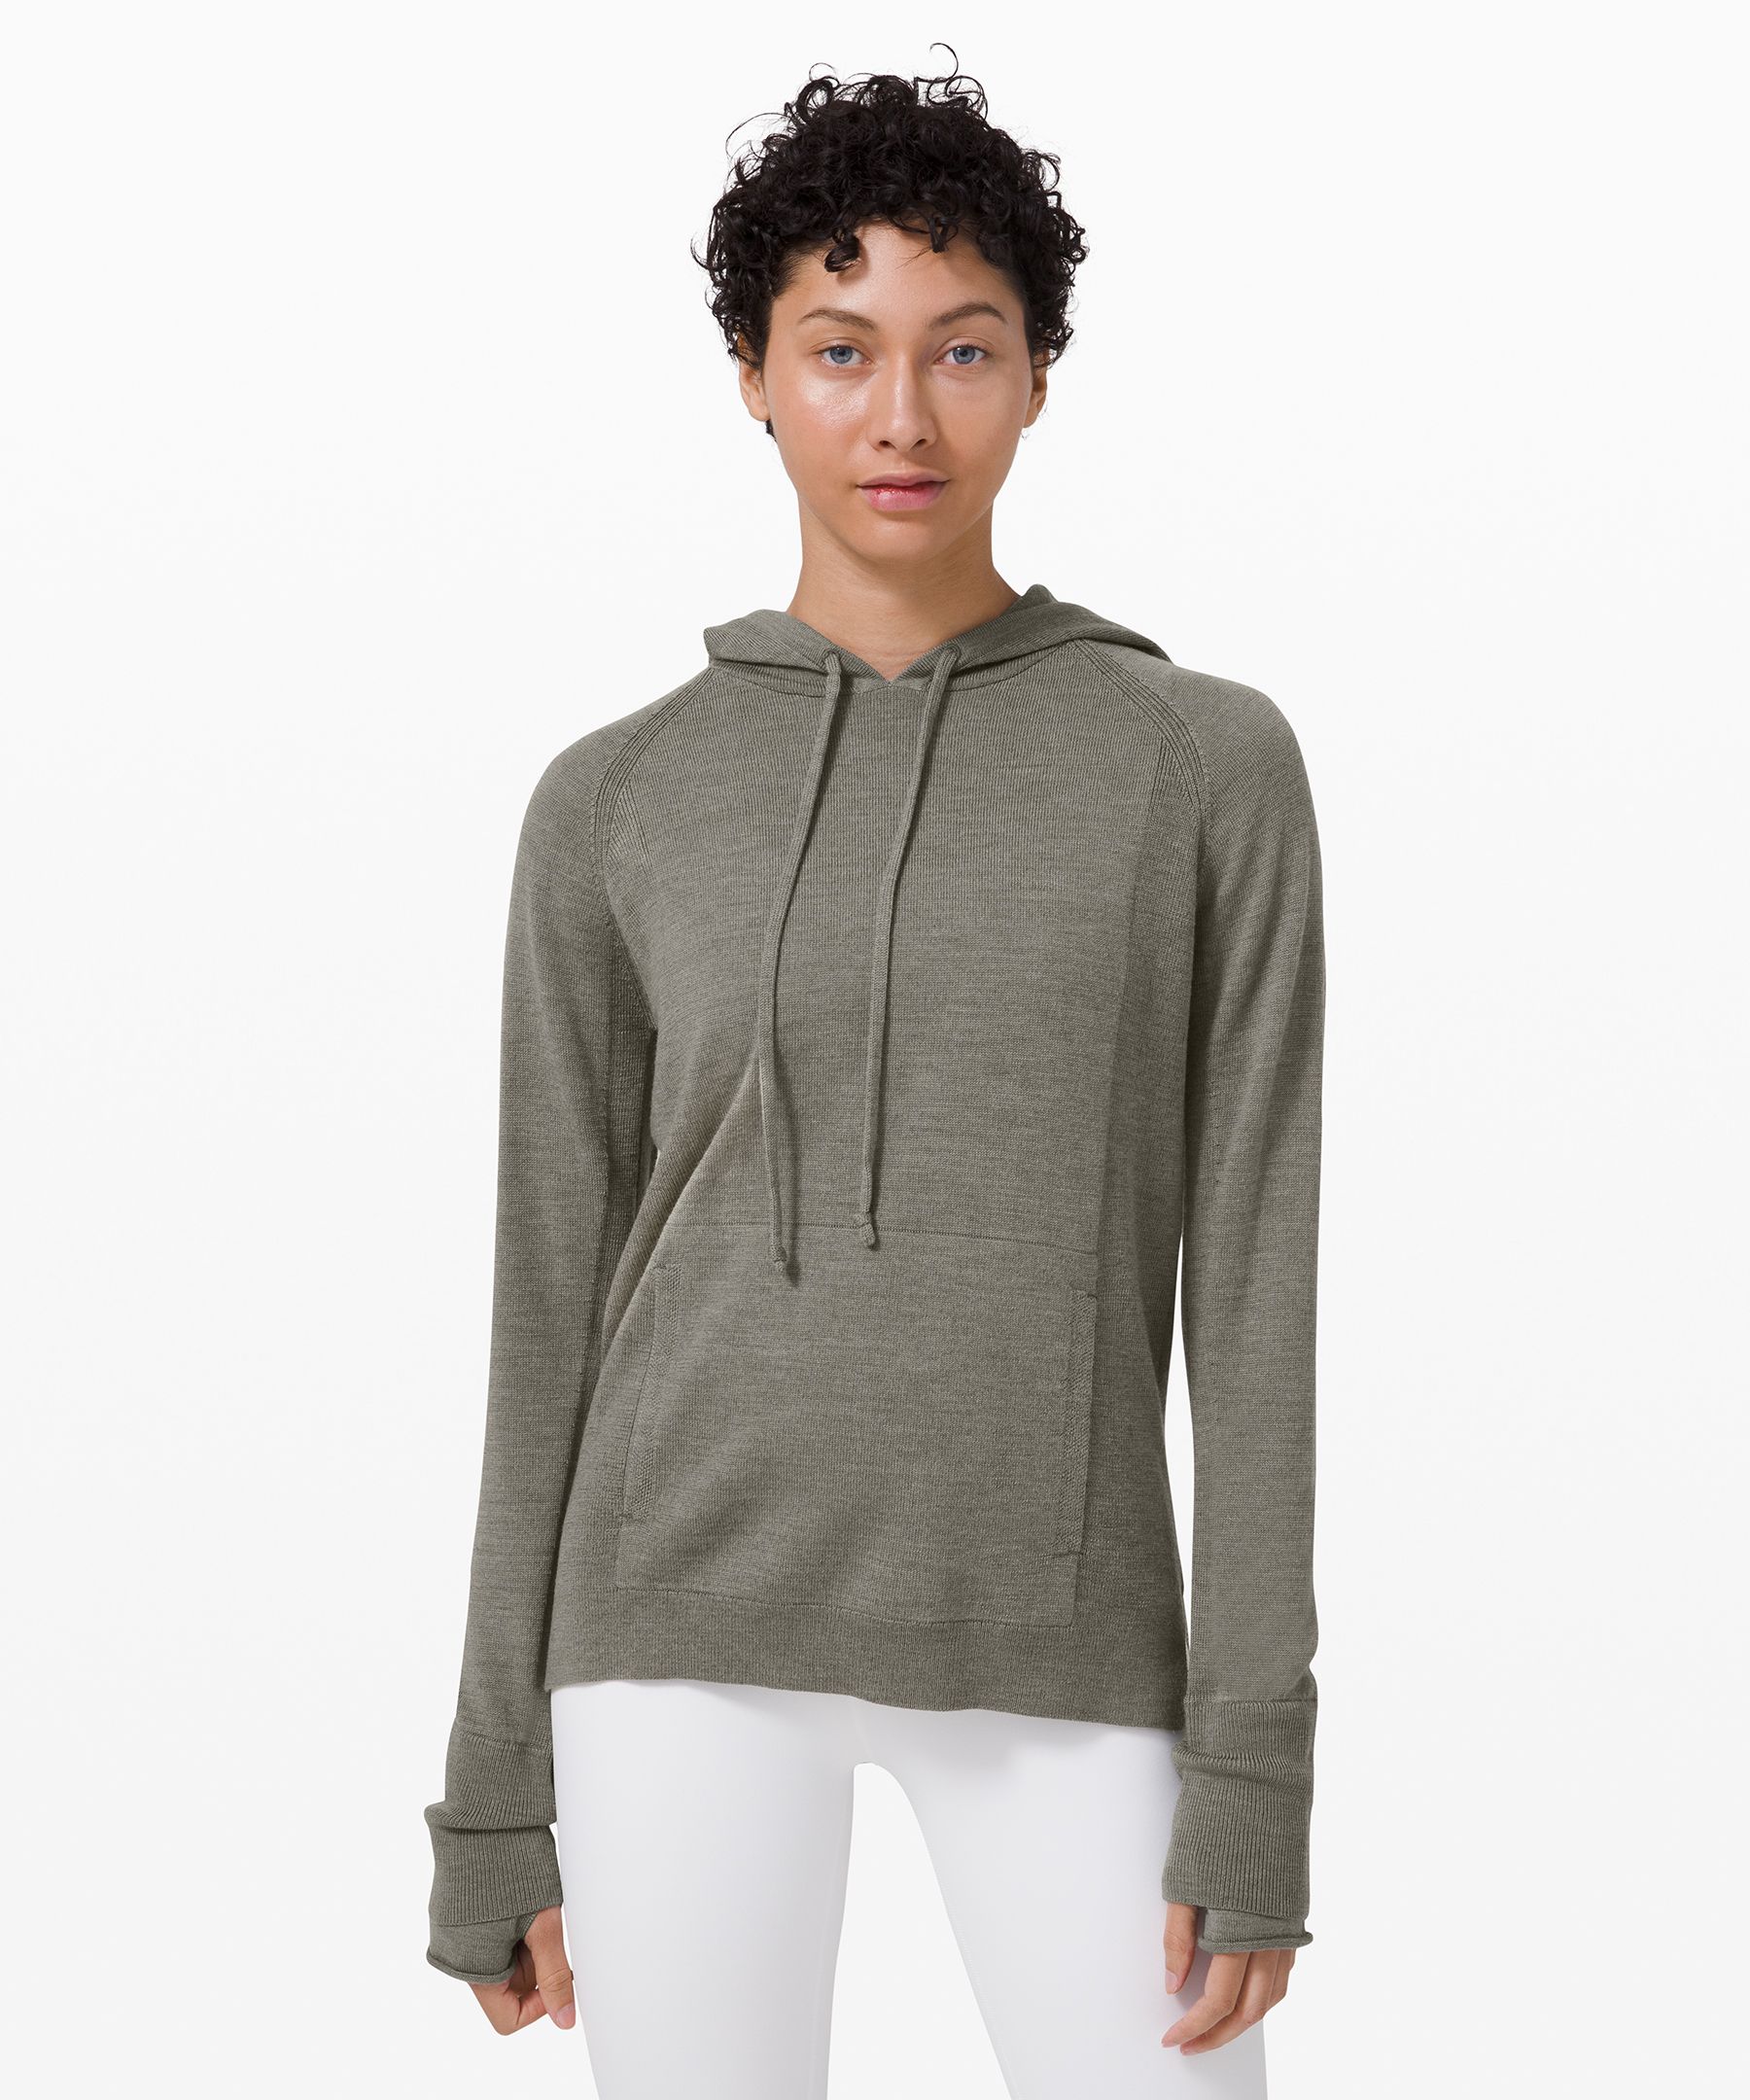 lululemon hooded sweater